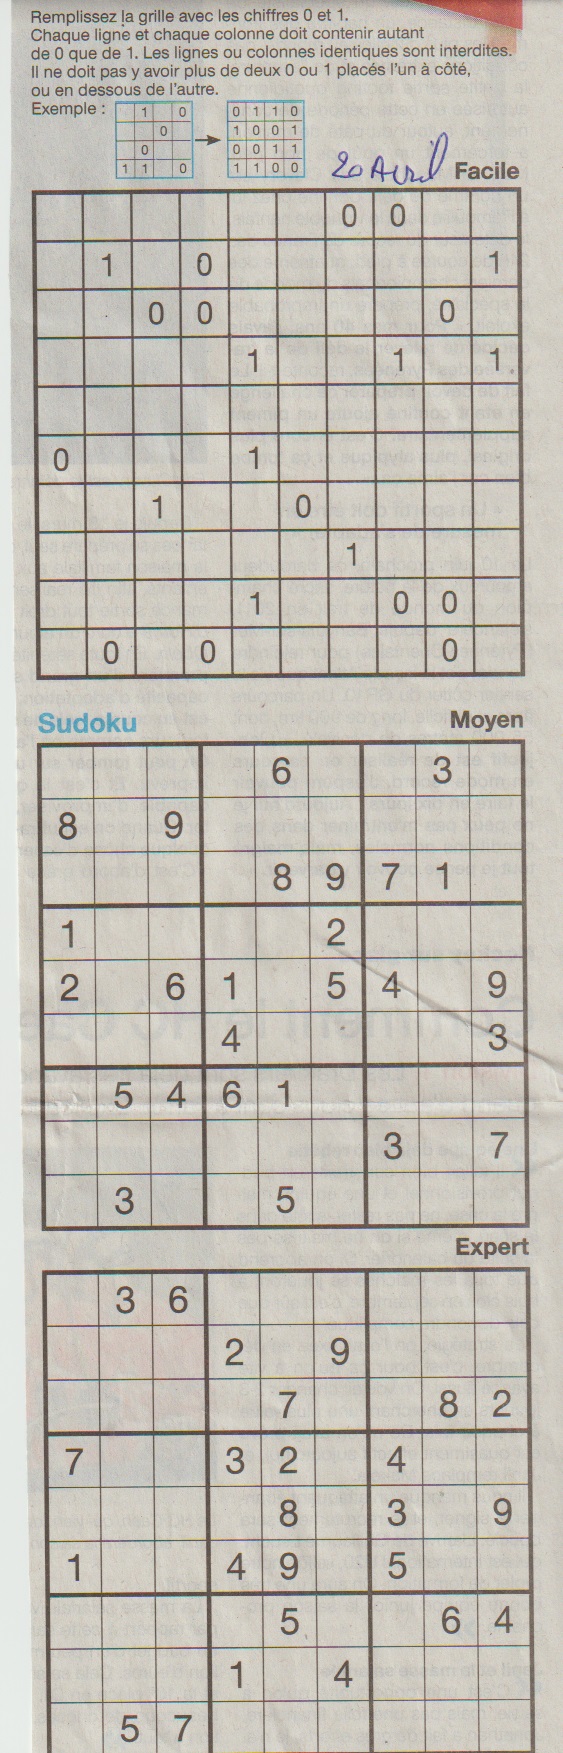 [Jeux] JEUX OUEST FRANCE du 2 Avril 2020 pour passer le temps - Page 2 Sudoku25